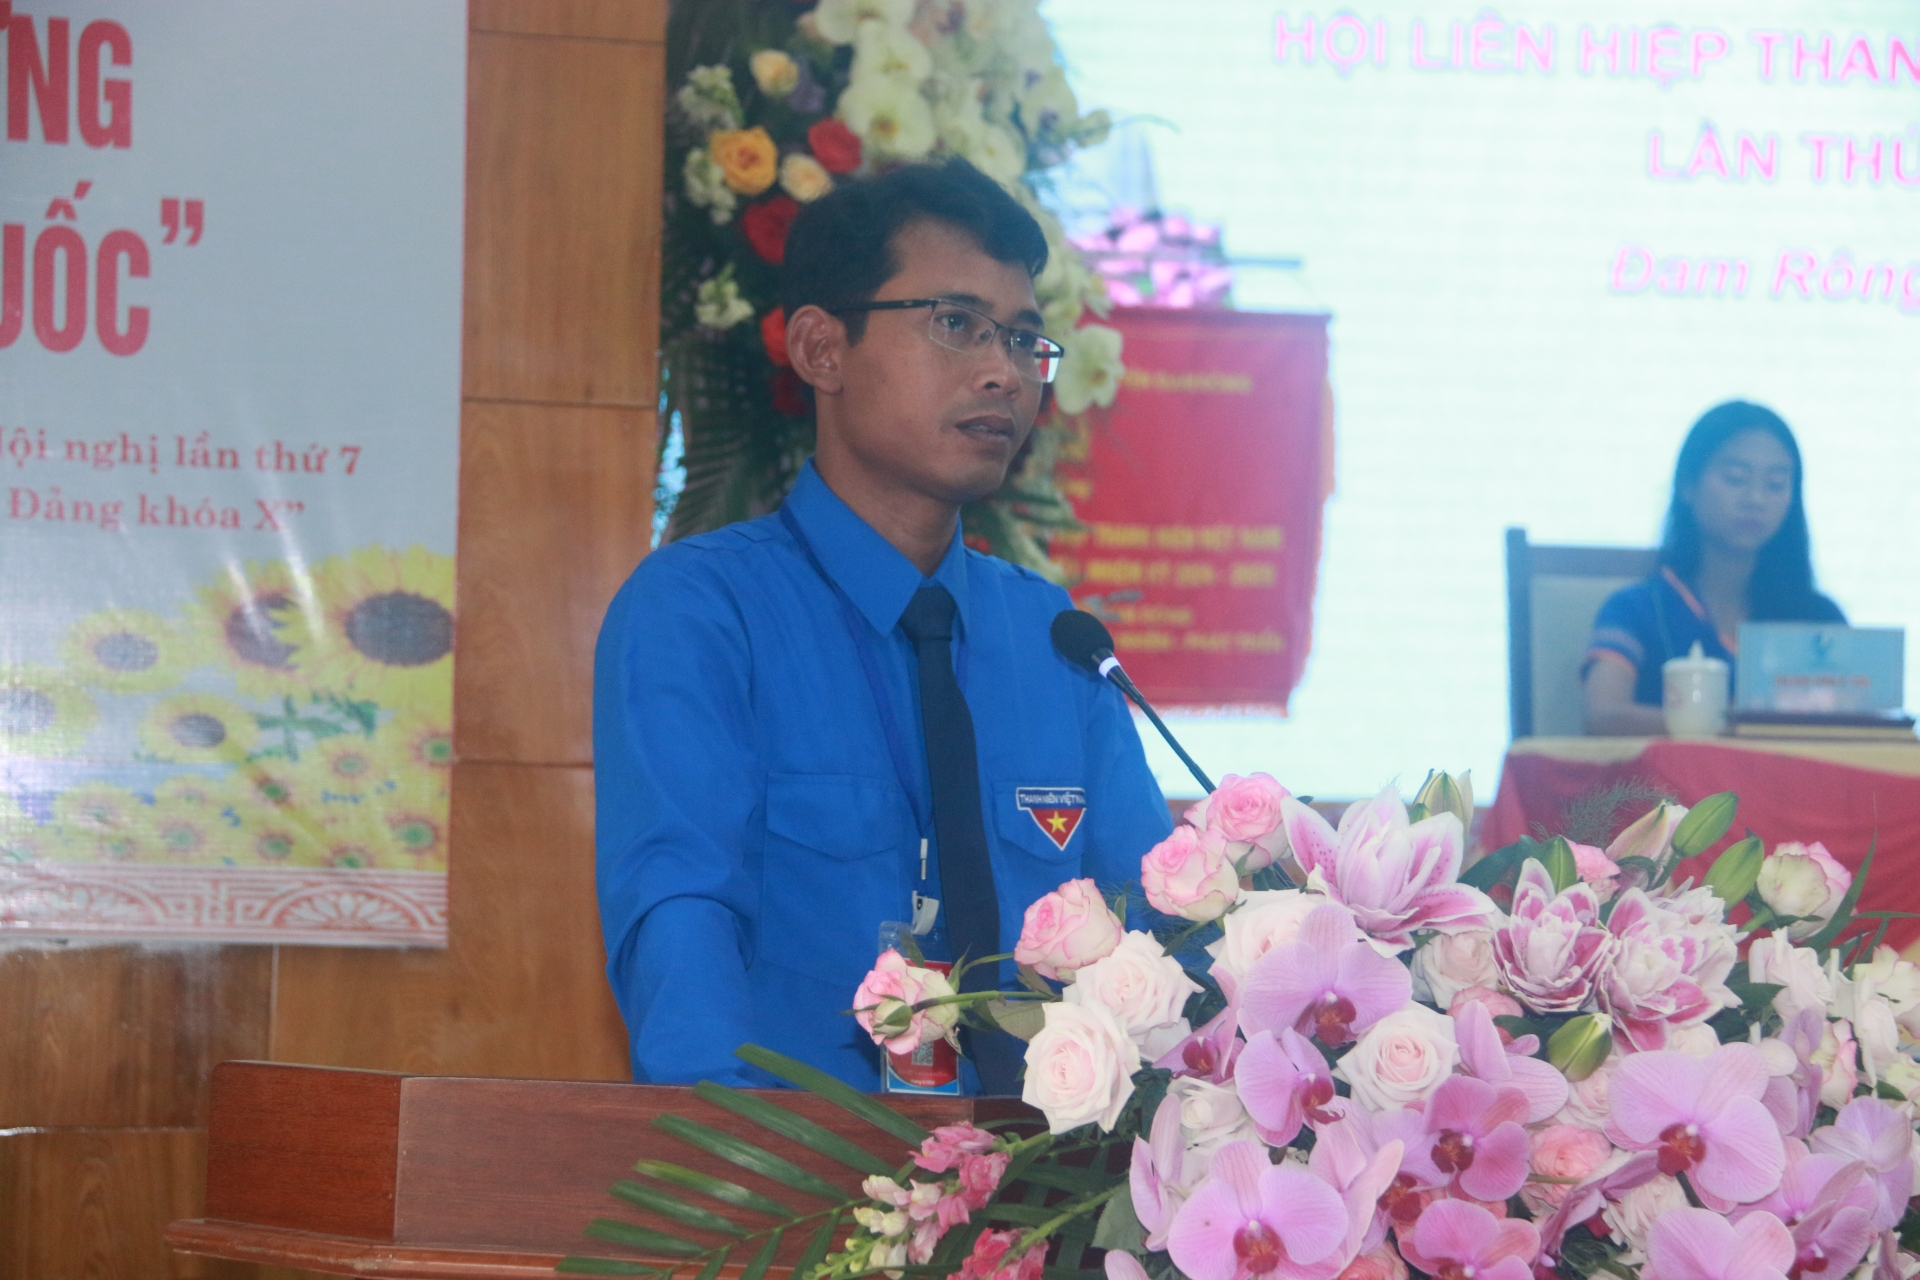 Đồng chí Ndu Ha Biên – Phó Bí thư Tỉnh đoàn phát biểu chỉ đạo và tặng hoa chúc mừng Đai hội